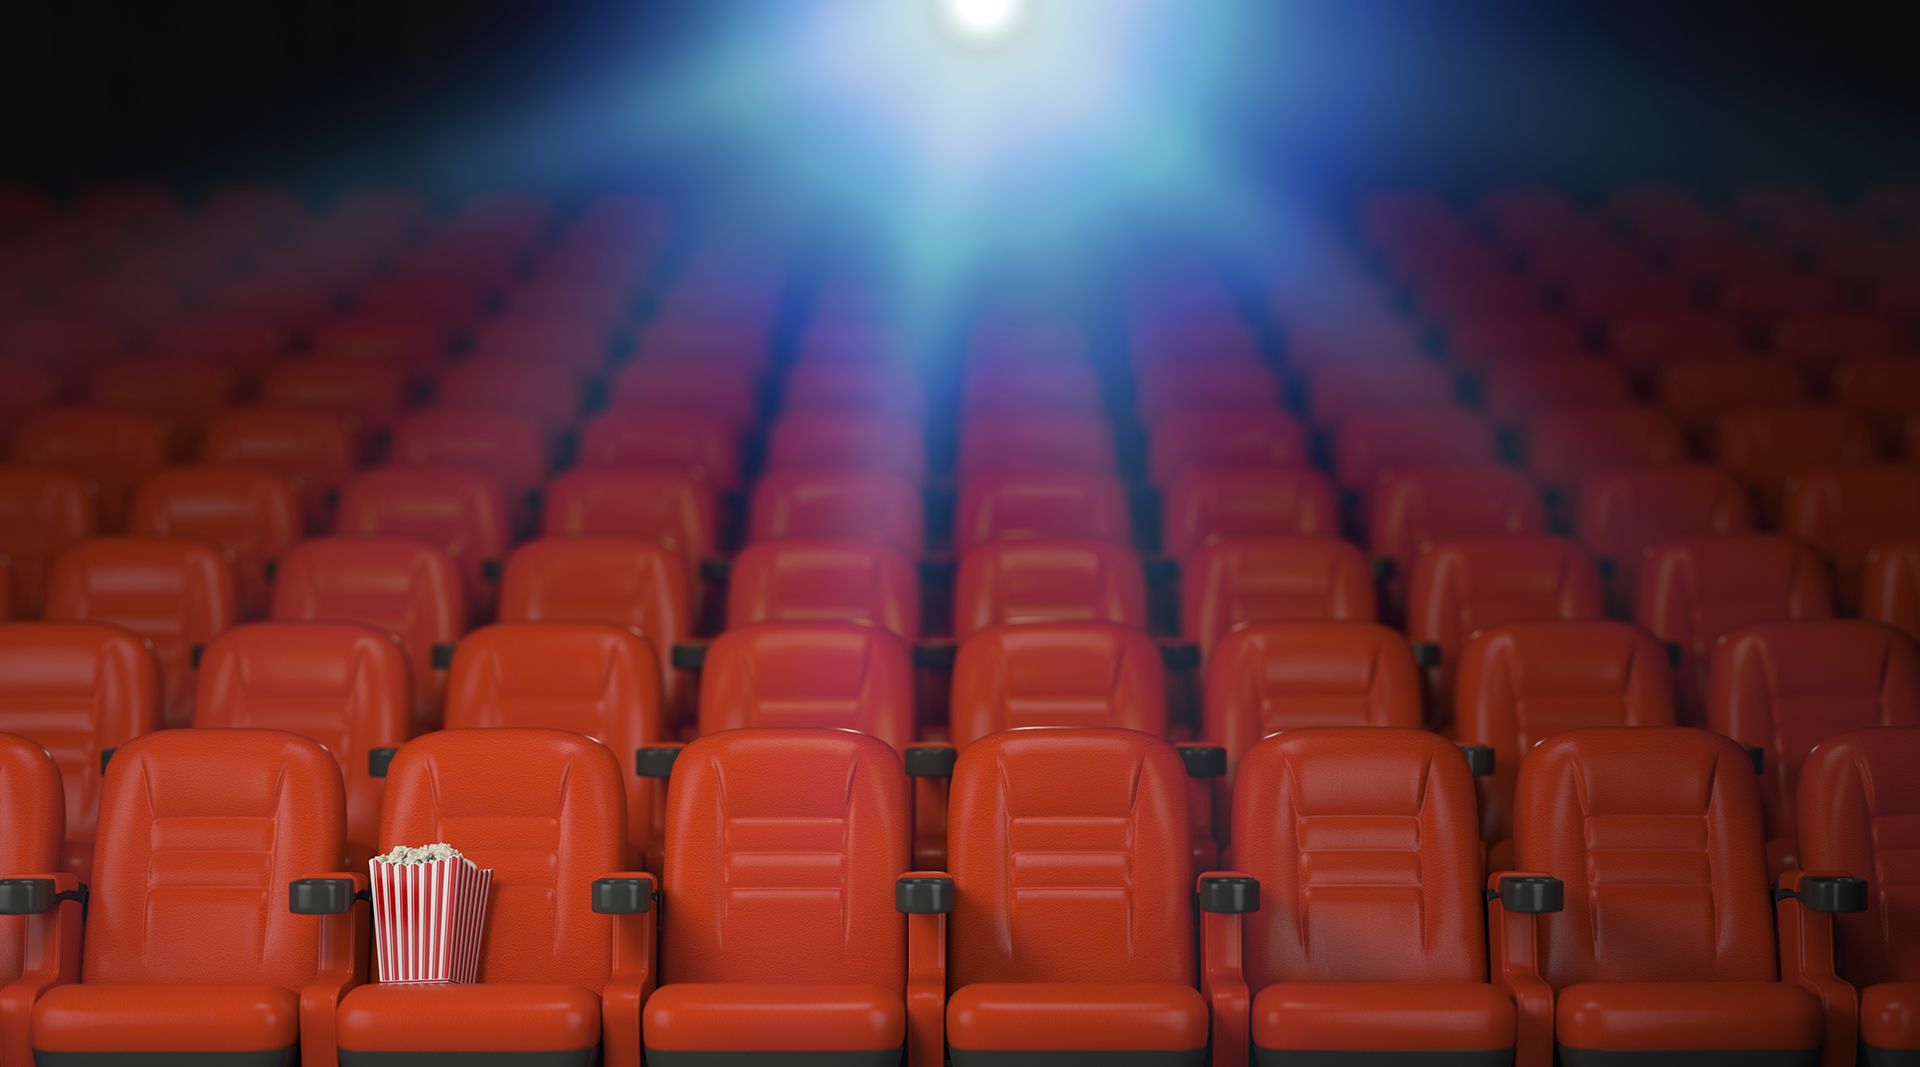 ابوظہبی محکمہ اقتصادی ترقی نے ابوظہبی میں شاپنگ مالز کے اندر سینما گھروں کے مالکان کو دوبارہ سے کام شروع کرنے کی اجازت دے دی ہے